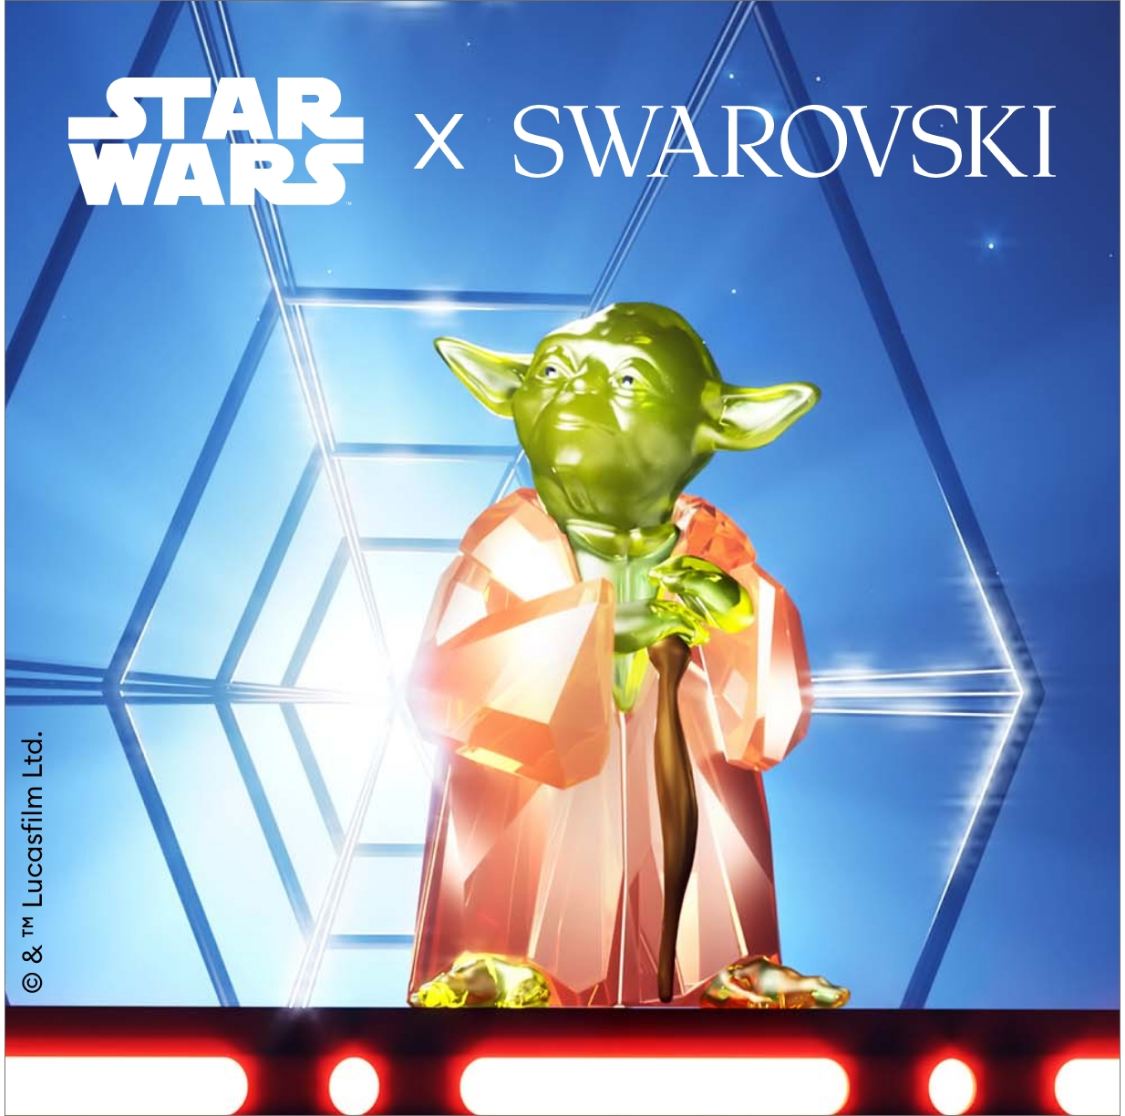 Star Wars x Swarovski